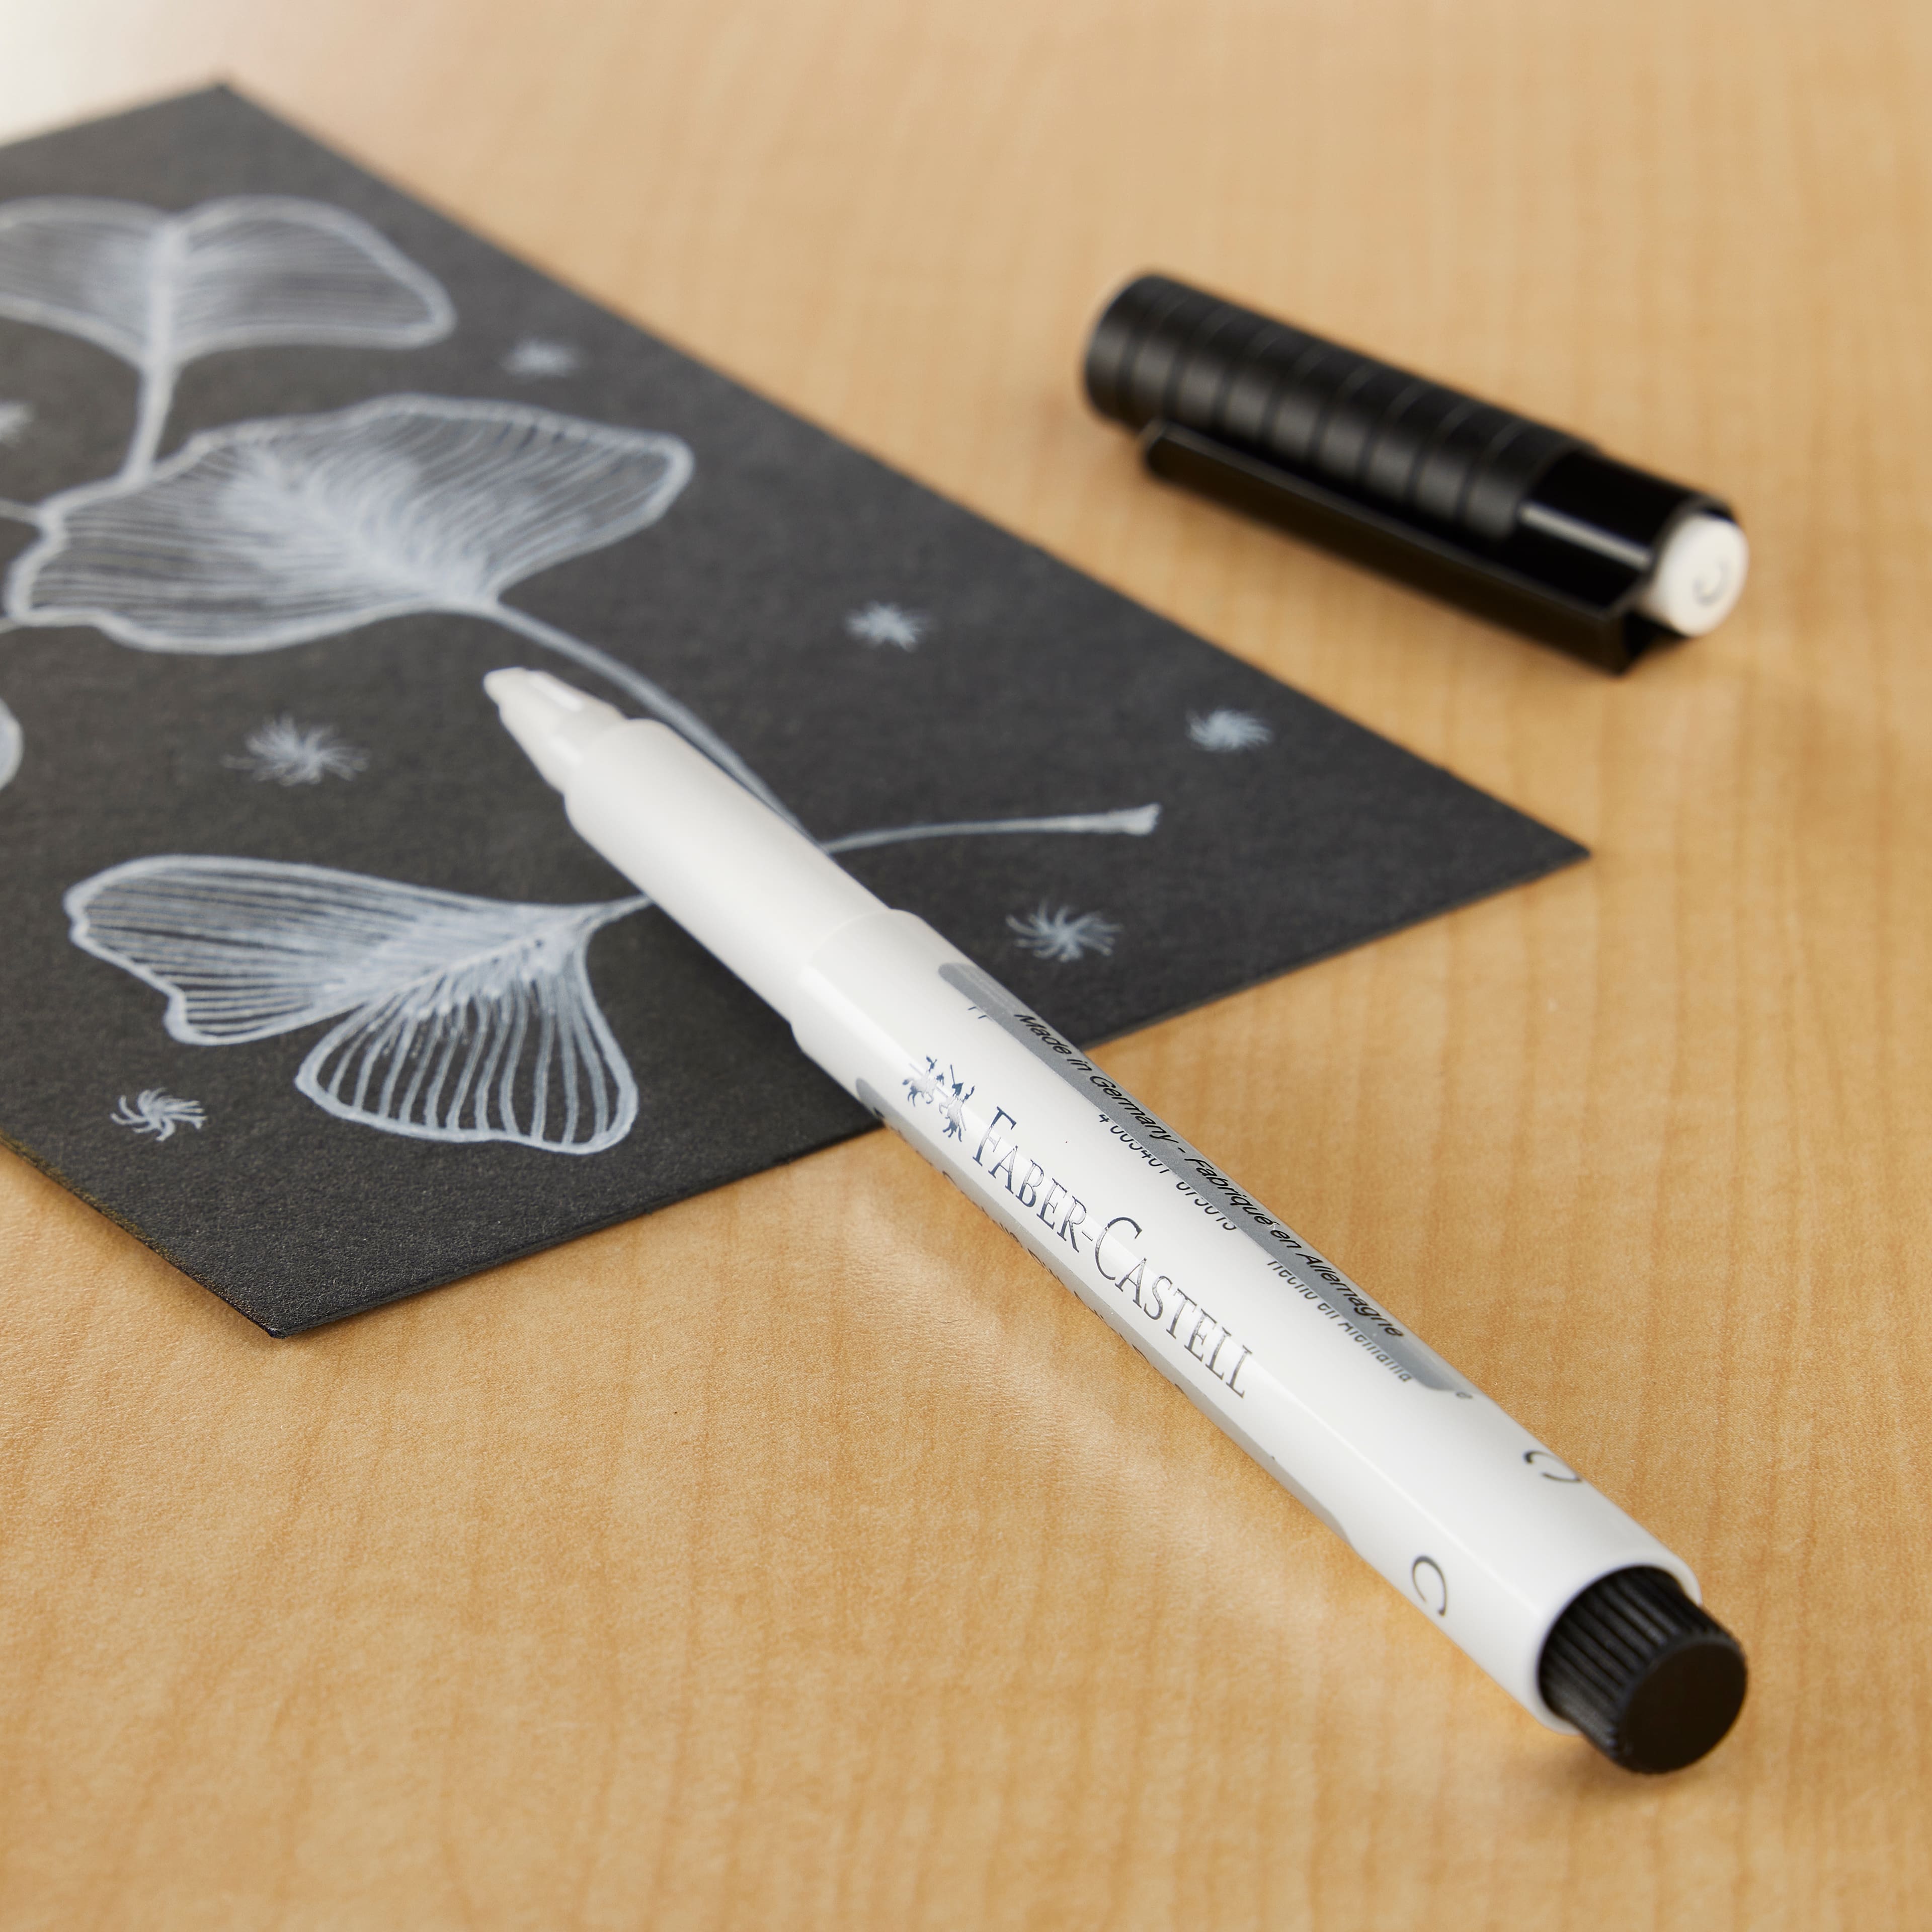 Faber-Castell : Pitt Artist Pen : Calligraphy : White